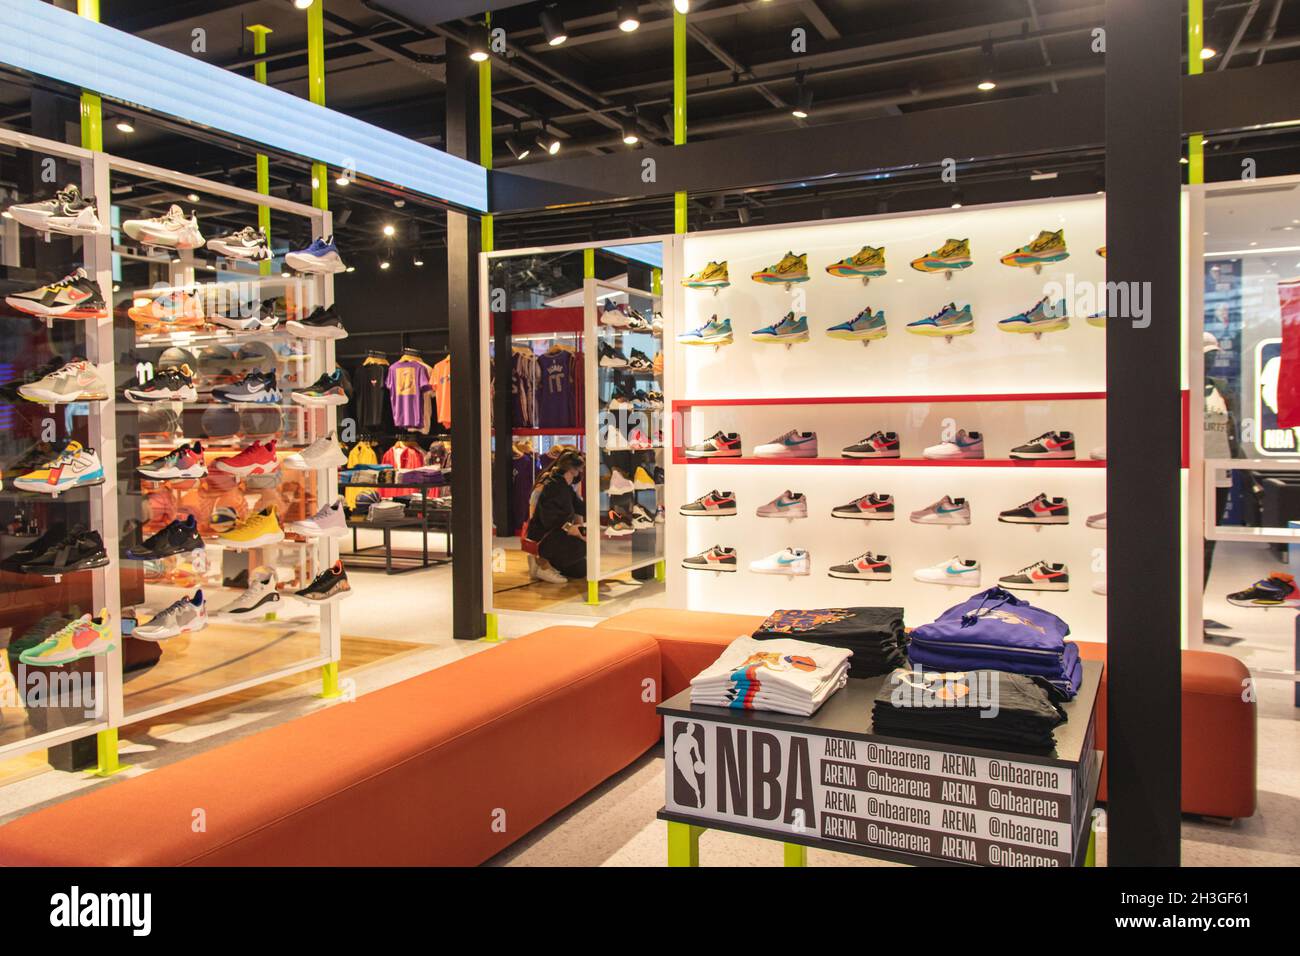 El São de octubre de 2021 se inauguró una tienda NBA en el centro comercial  Morumbi Town Mall, en 28 Paulo, Brasil. La tienda, ambientada en la liga de  baloncesto norteamericana, es